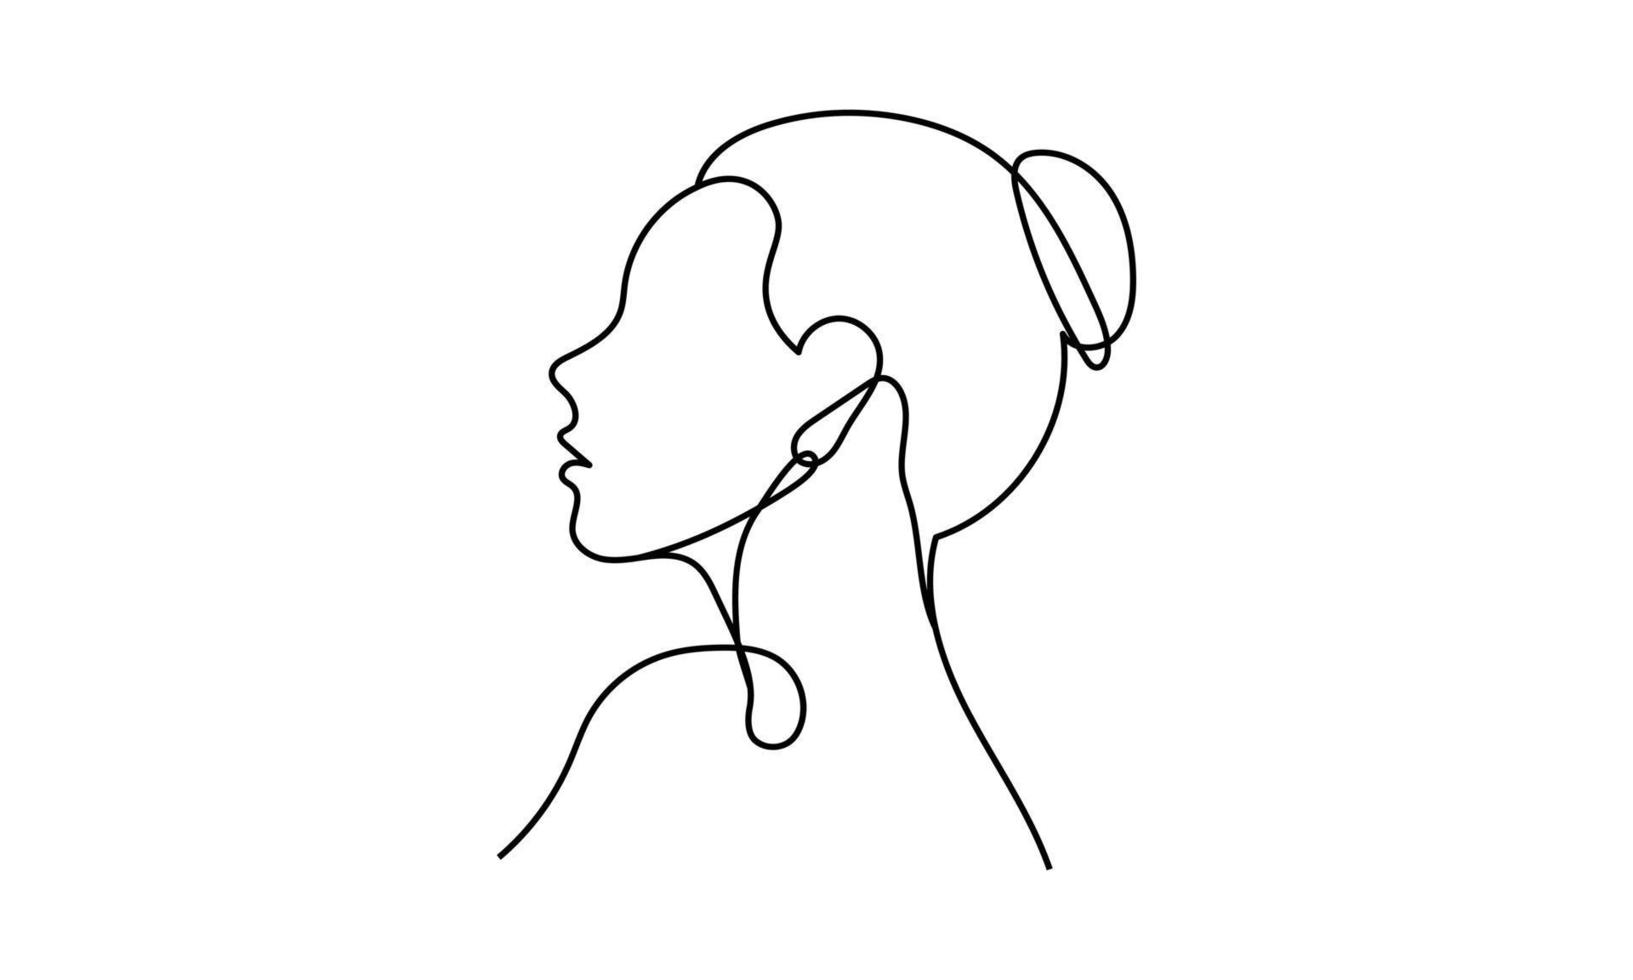 desenho contínuo de uma linha de uma cabeça feminina com o cabelo preso em um coque de lado. mão desenhada vetor linha arte minimal design isolado no fundo branco.